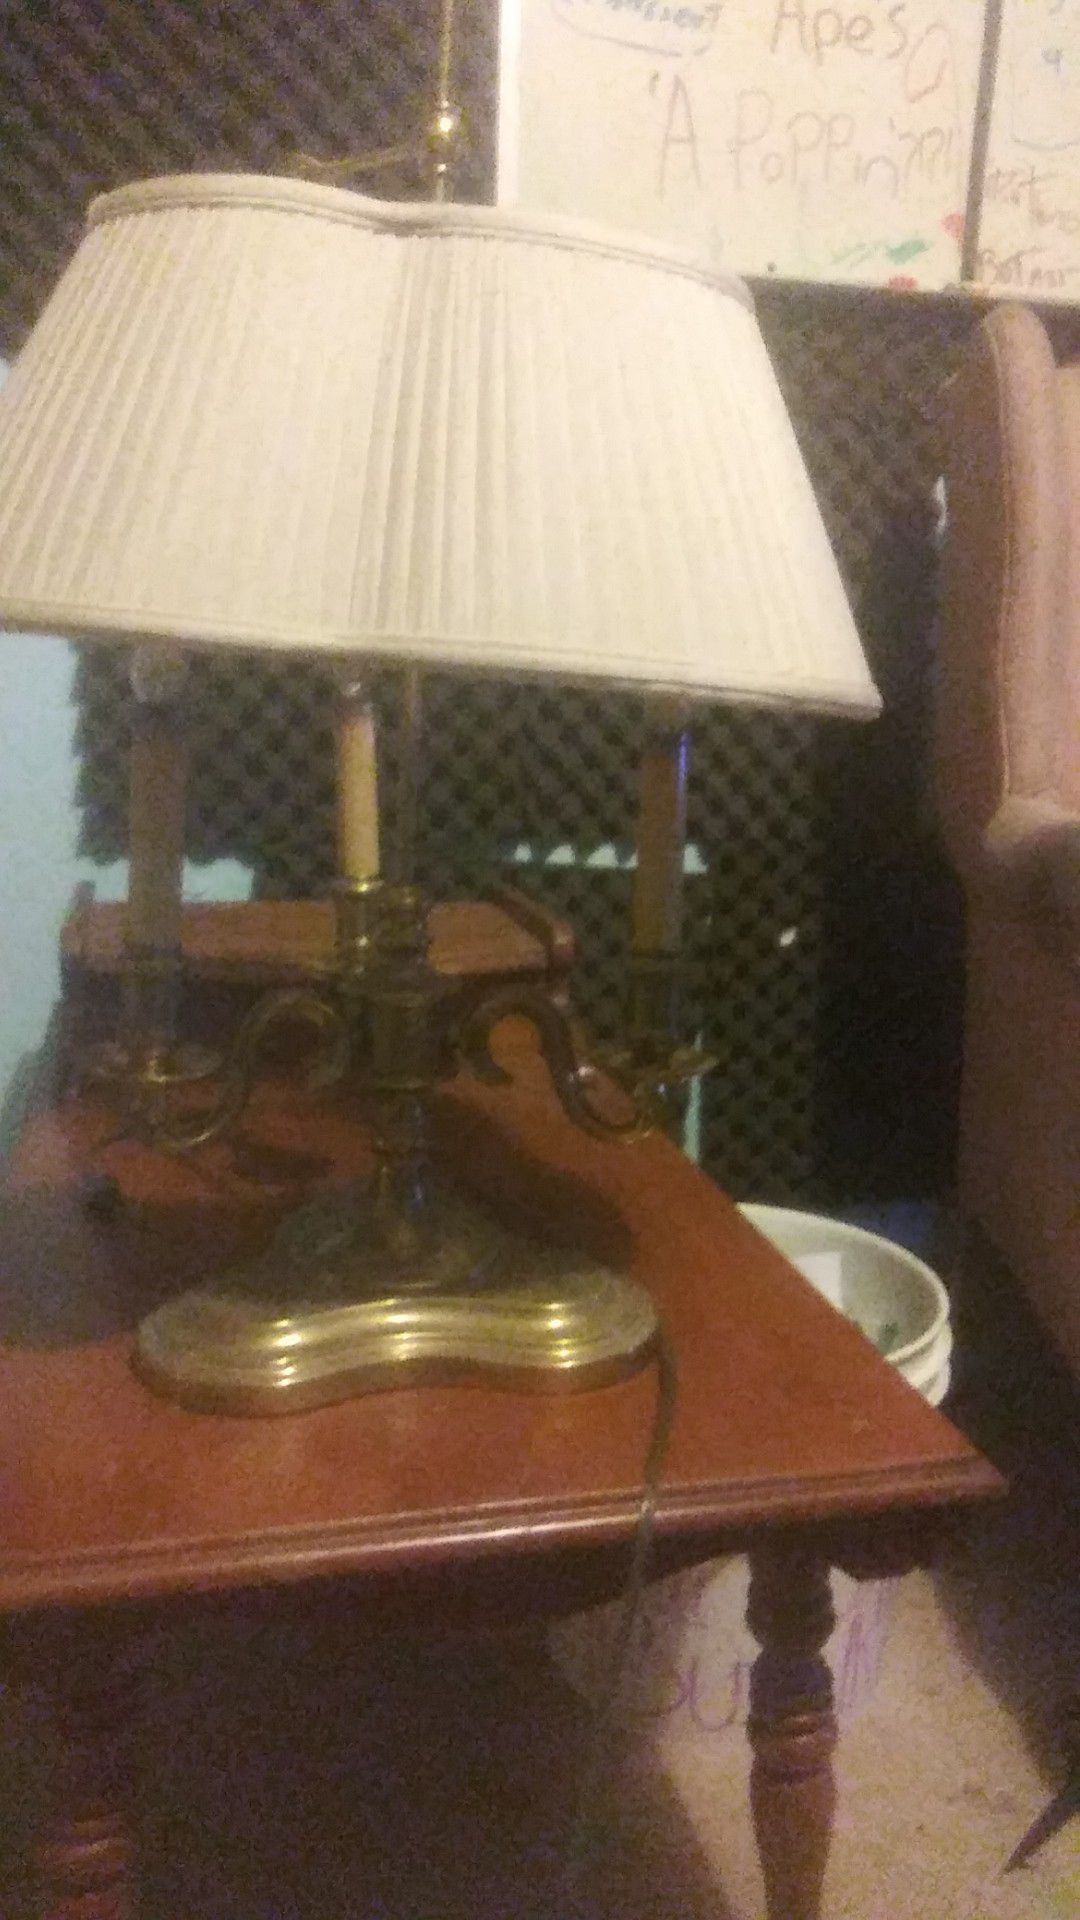 Antique desktop lamp